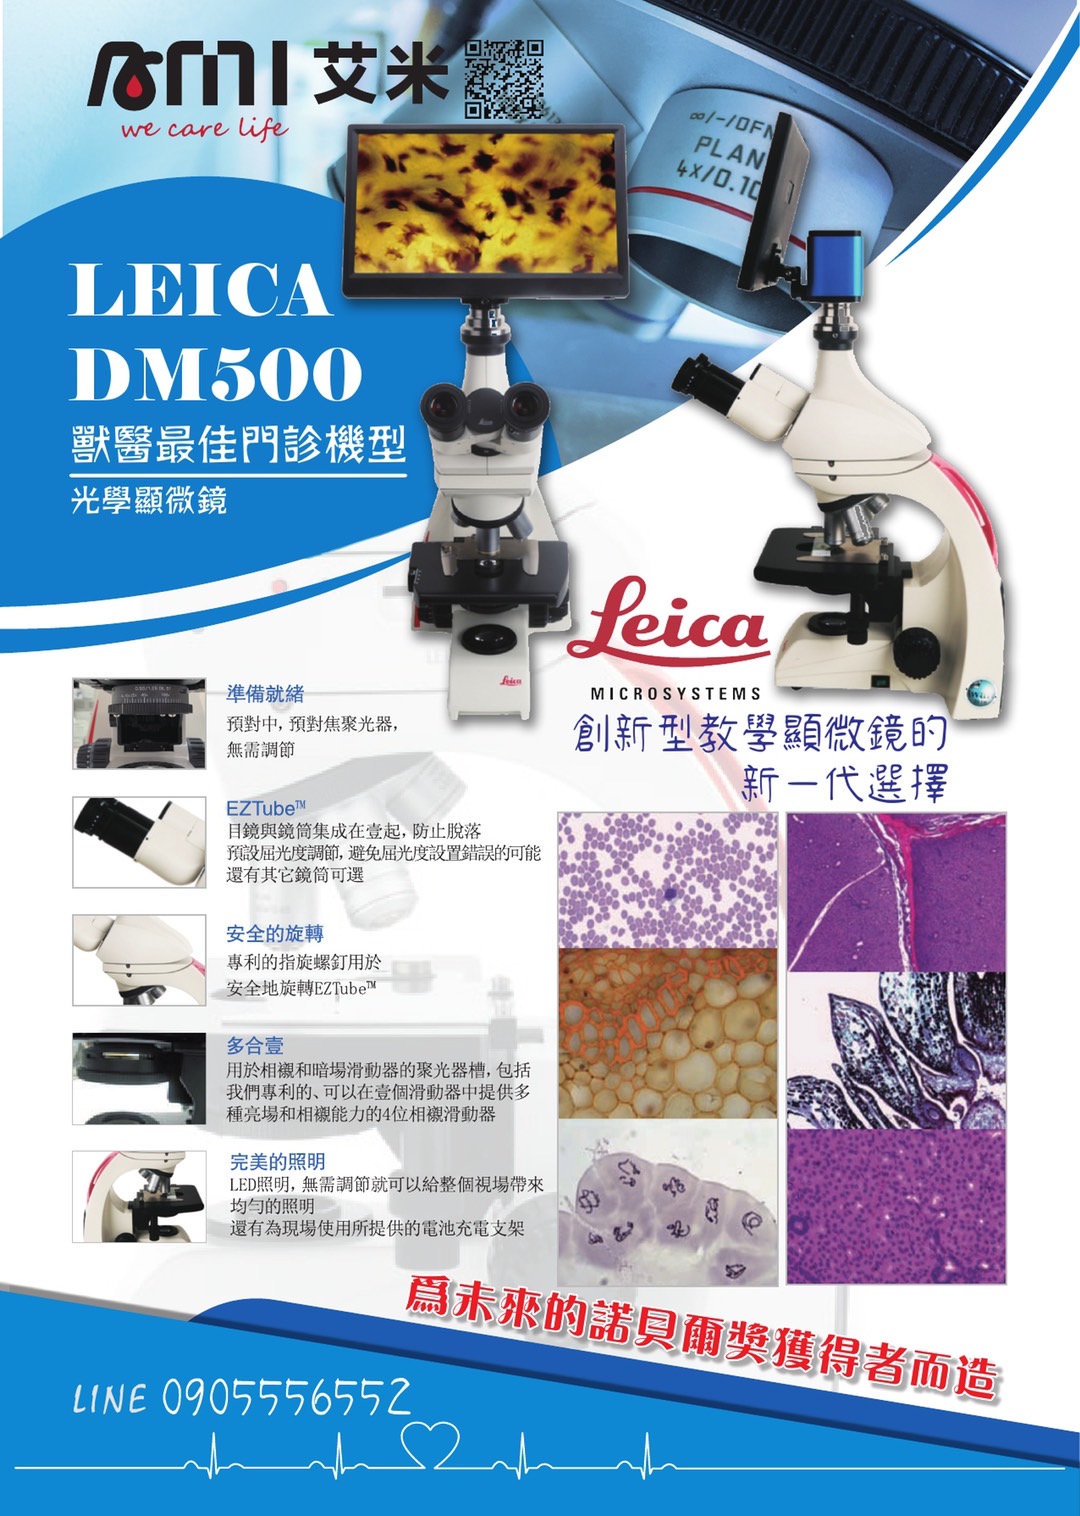 LEICA DM500